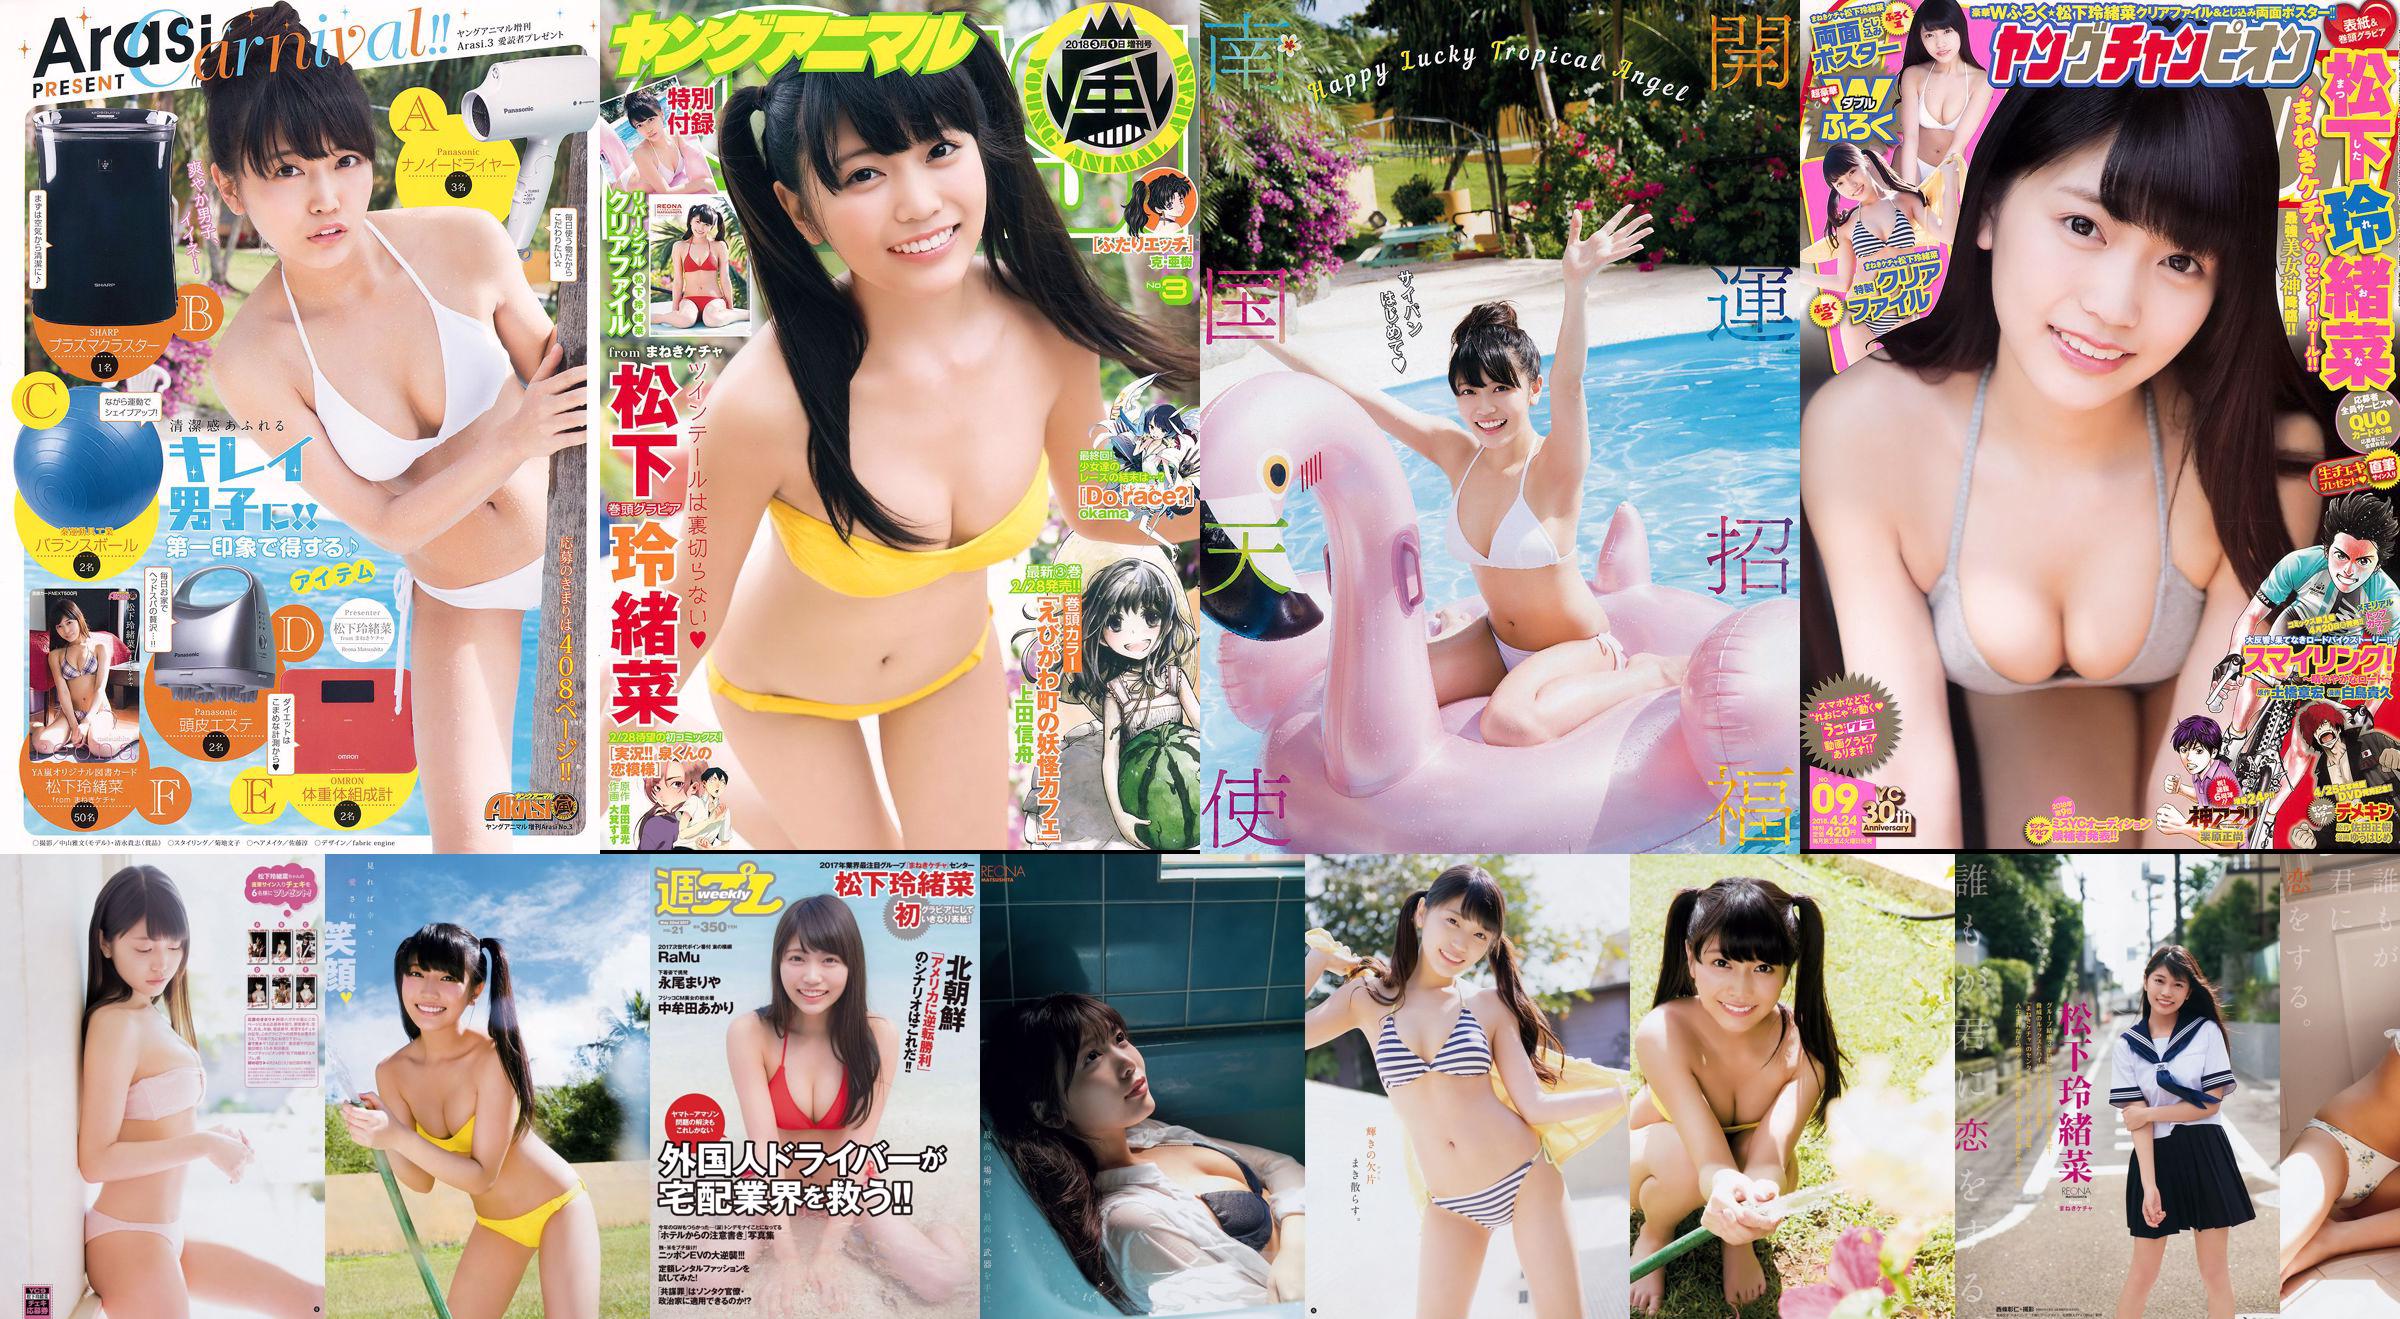 Reona Matsushita RaMu Akari Takamuta Mariya Nagao Suzuka Akimoto Michiko Tanaka Hazuki Nishioka [Weekly Playboy] 2017 No.21 Photographie No.2eaa69 Page 1